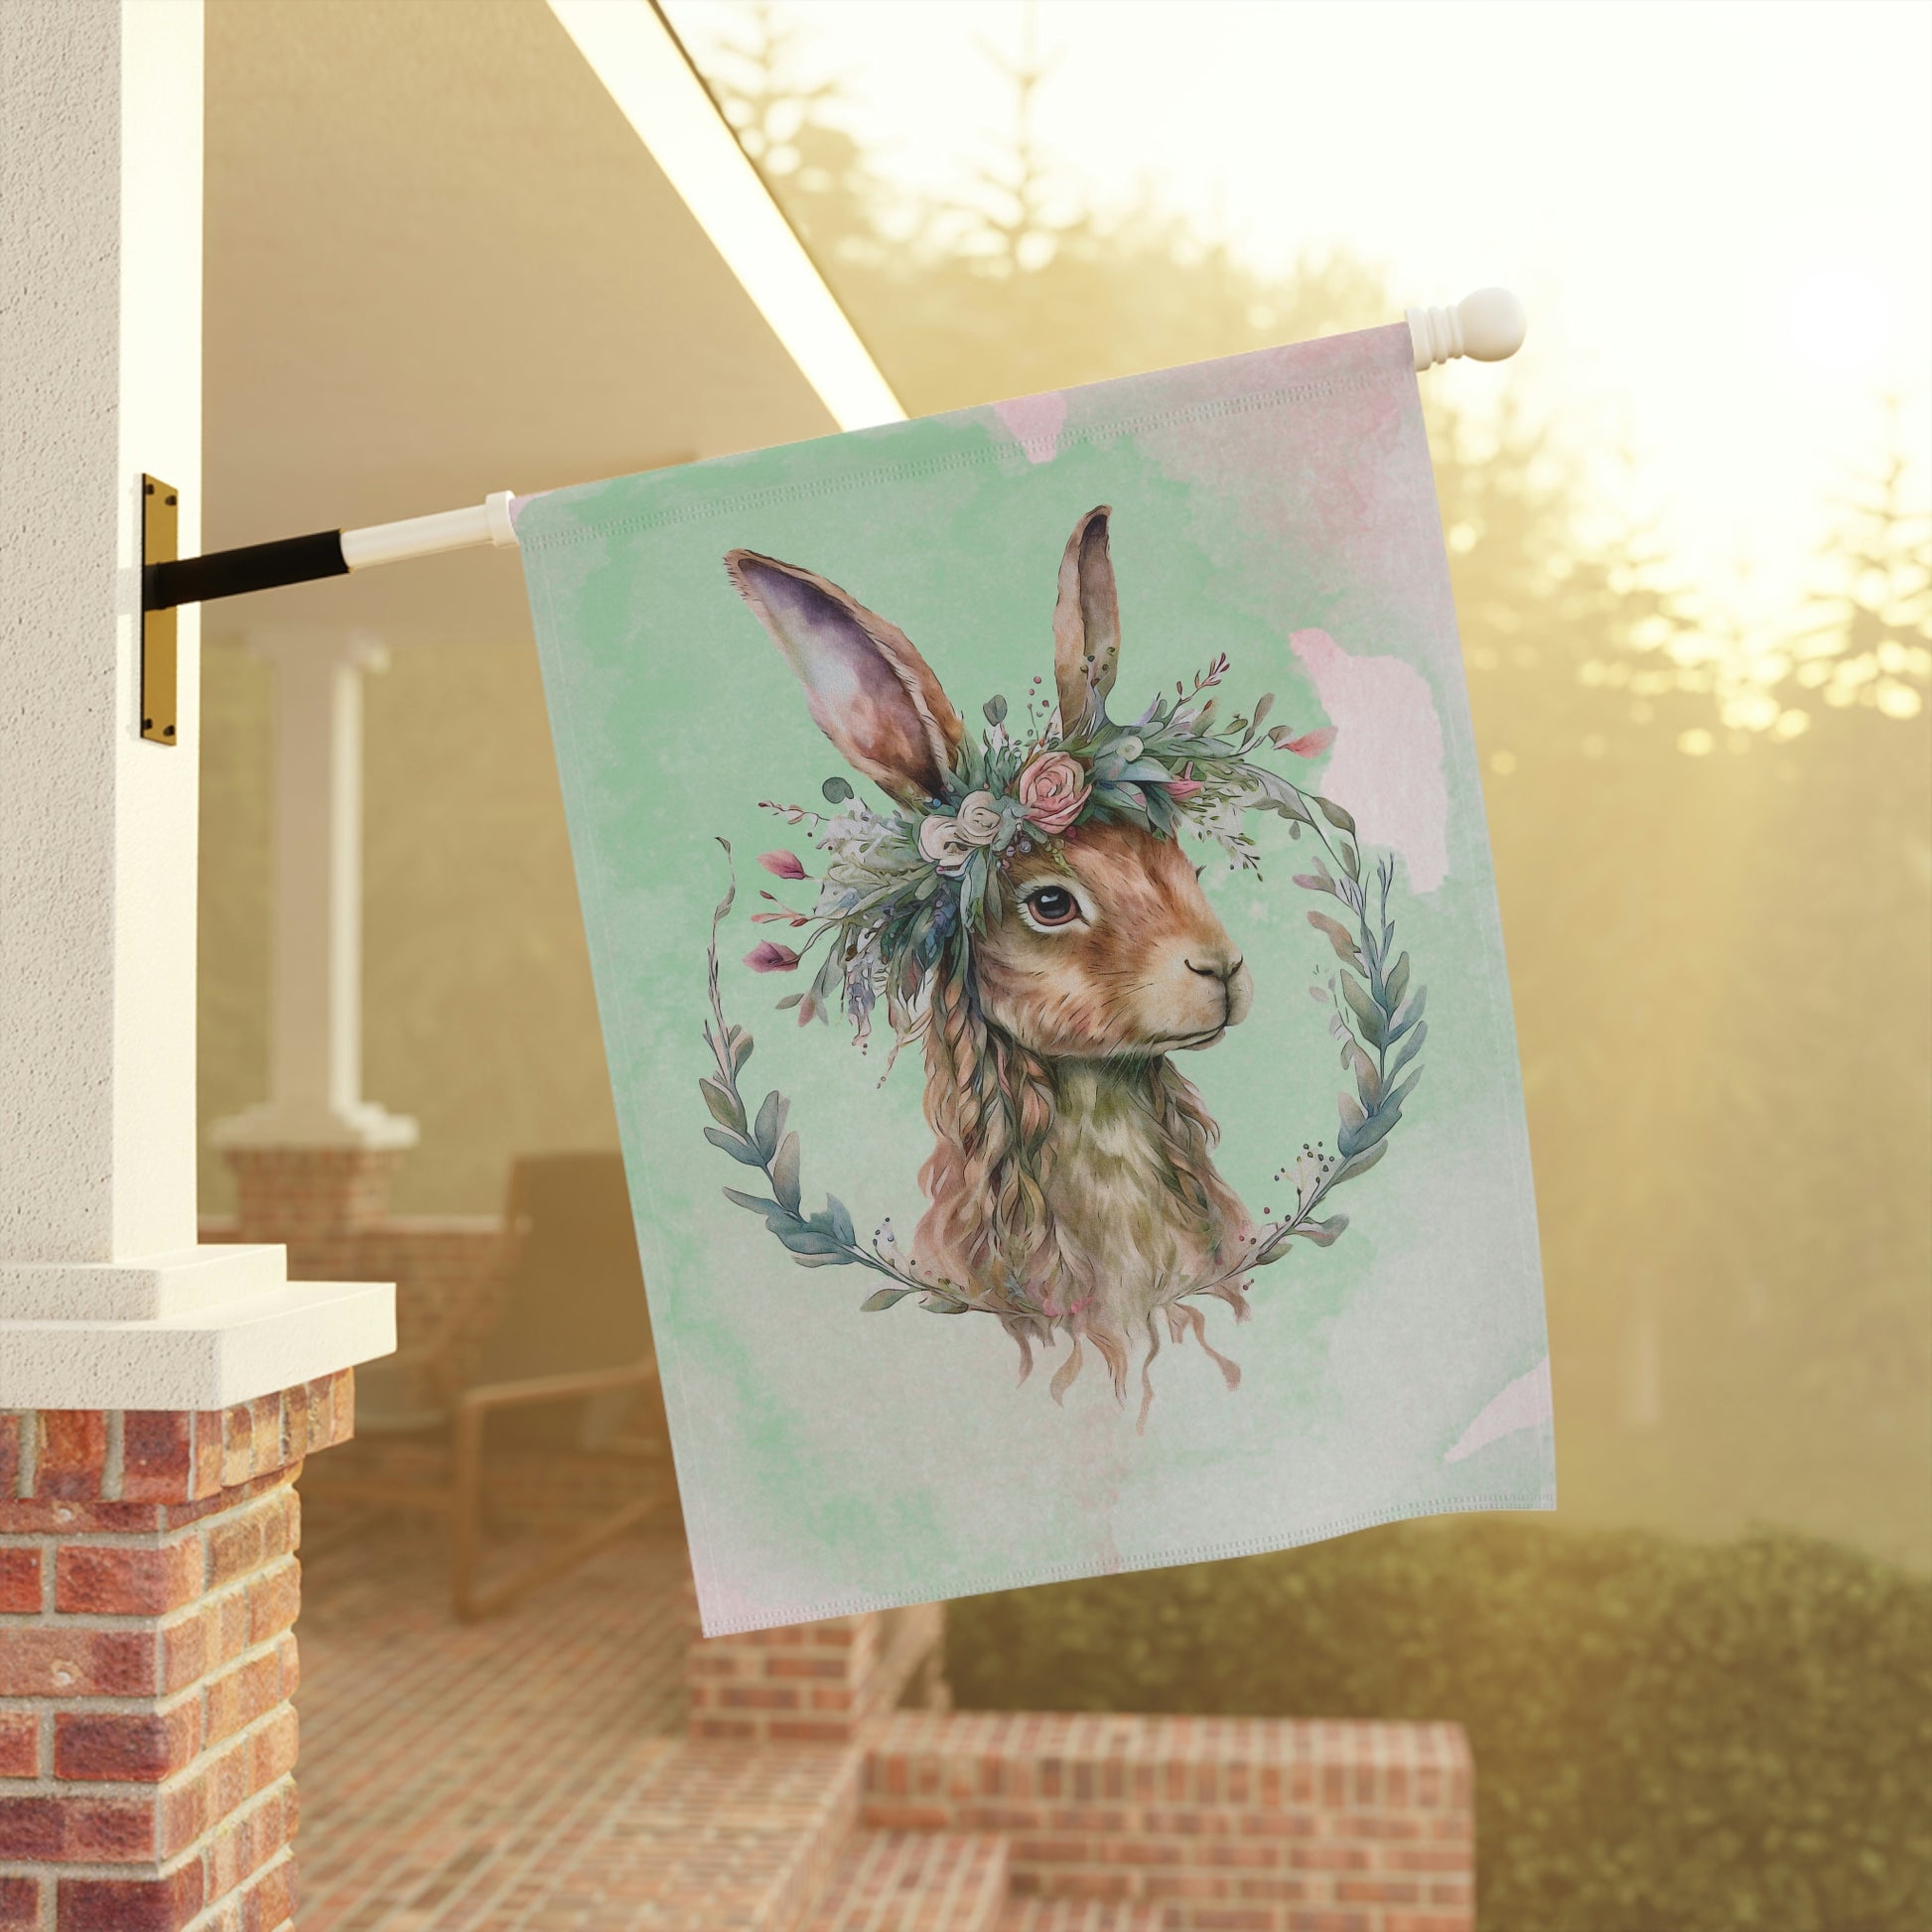 Rabbit in Spring Wreath Garden & House Banner